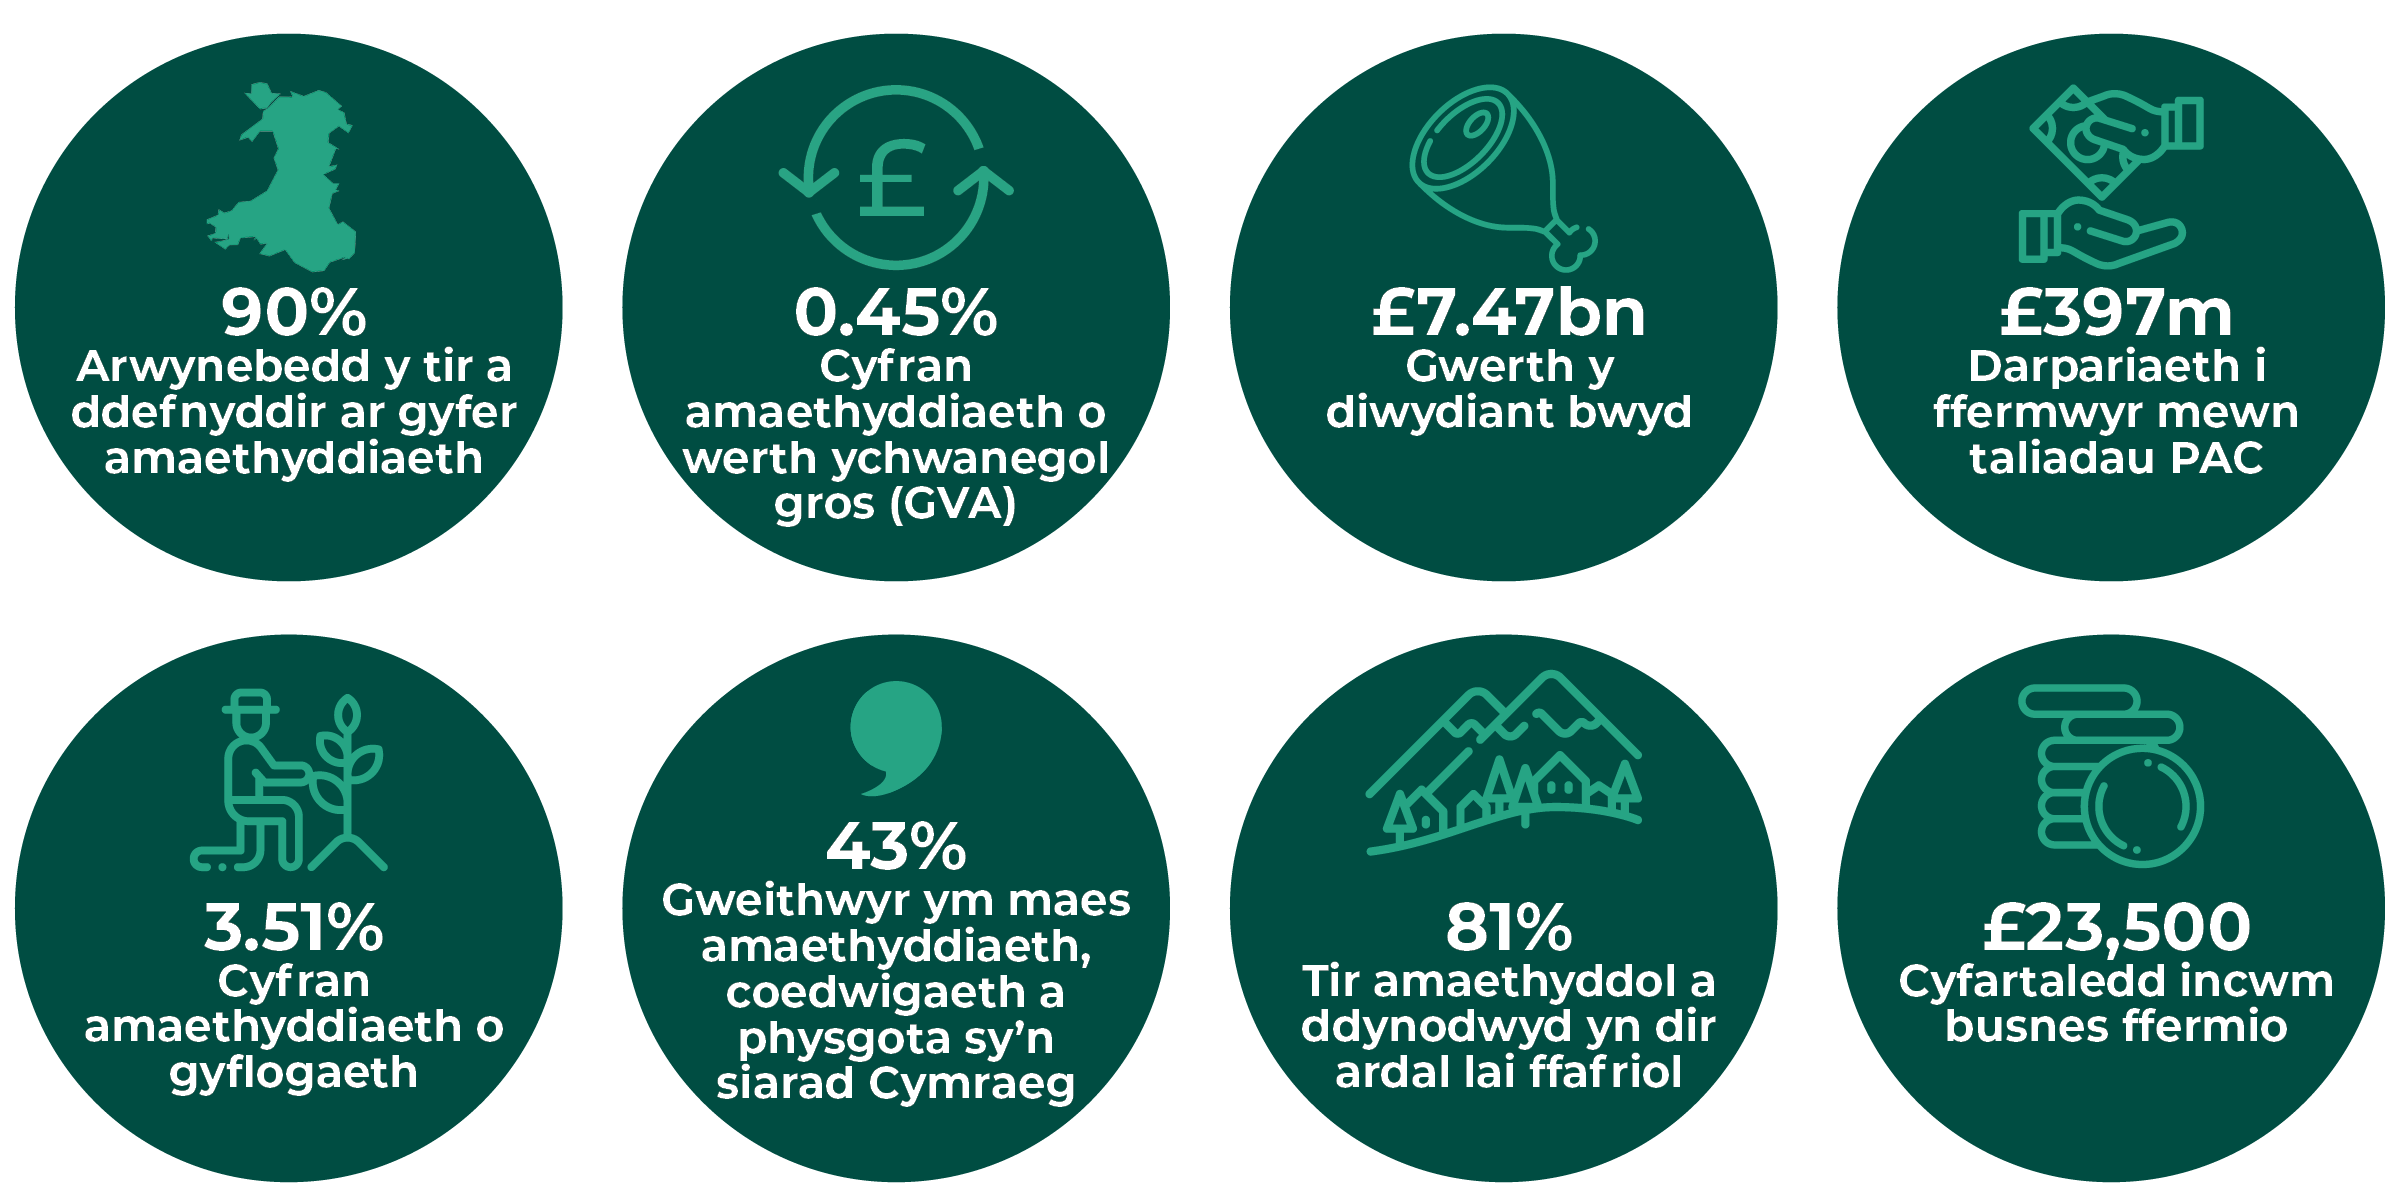 Ystadegau ffermio Cymru – 90% y ganran o arwynebedd tir Cymru sy’n cael ei defnyddio ar gyfer ffermio; 0.45% cyfran amaethyddiaeth o GVA Cymru; £7.47 biliwn gwerth y diwydiant bwyd; £397 miliwn y swm a ddarperir i ffermwyr mewn taliadau PAC; 3.51% cyfran amaethyddiaeth o gyflogaeth yng Nghymru; 43% canran y gweithwyr yn y sector amaeth, coedwigaeth a physgota sy’n siarad Cymraeg; 81% y ganran o arwynebedd tir amaethyddol Cymru a ddynodwyd yn dir mewn ardal lai ffafriol (LFA); £23,500 incwm busnes fferm, ar gyfartaledd.